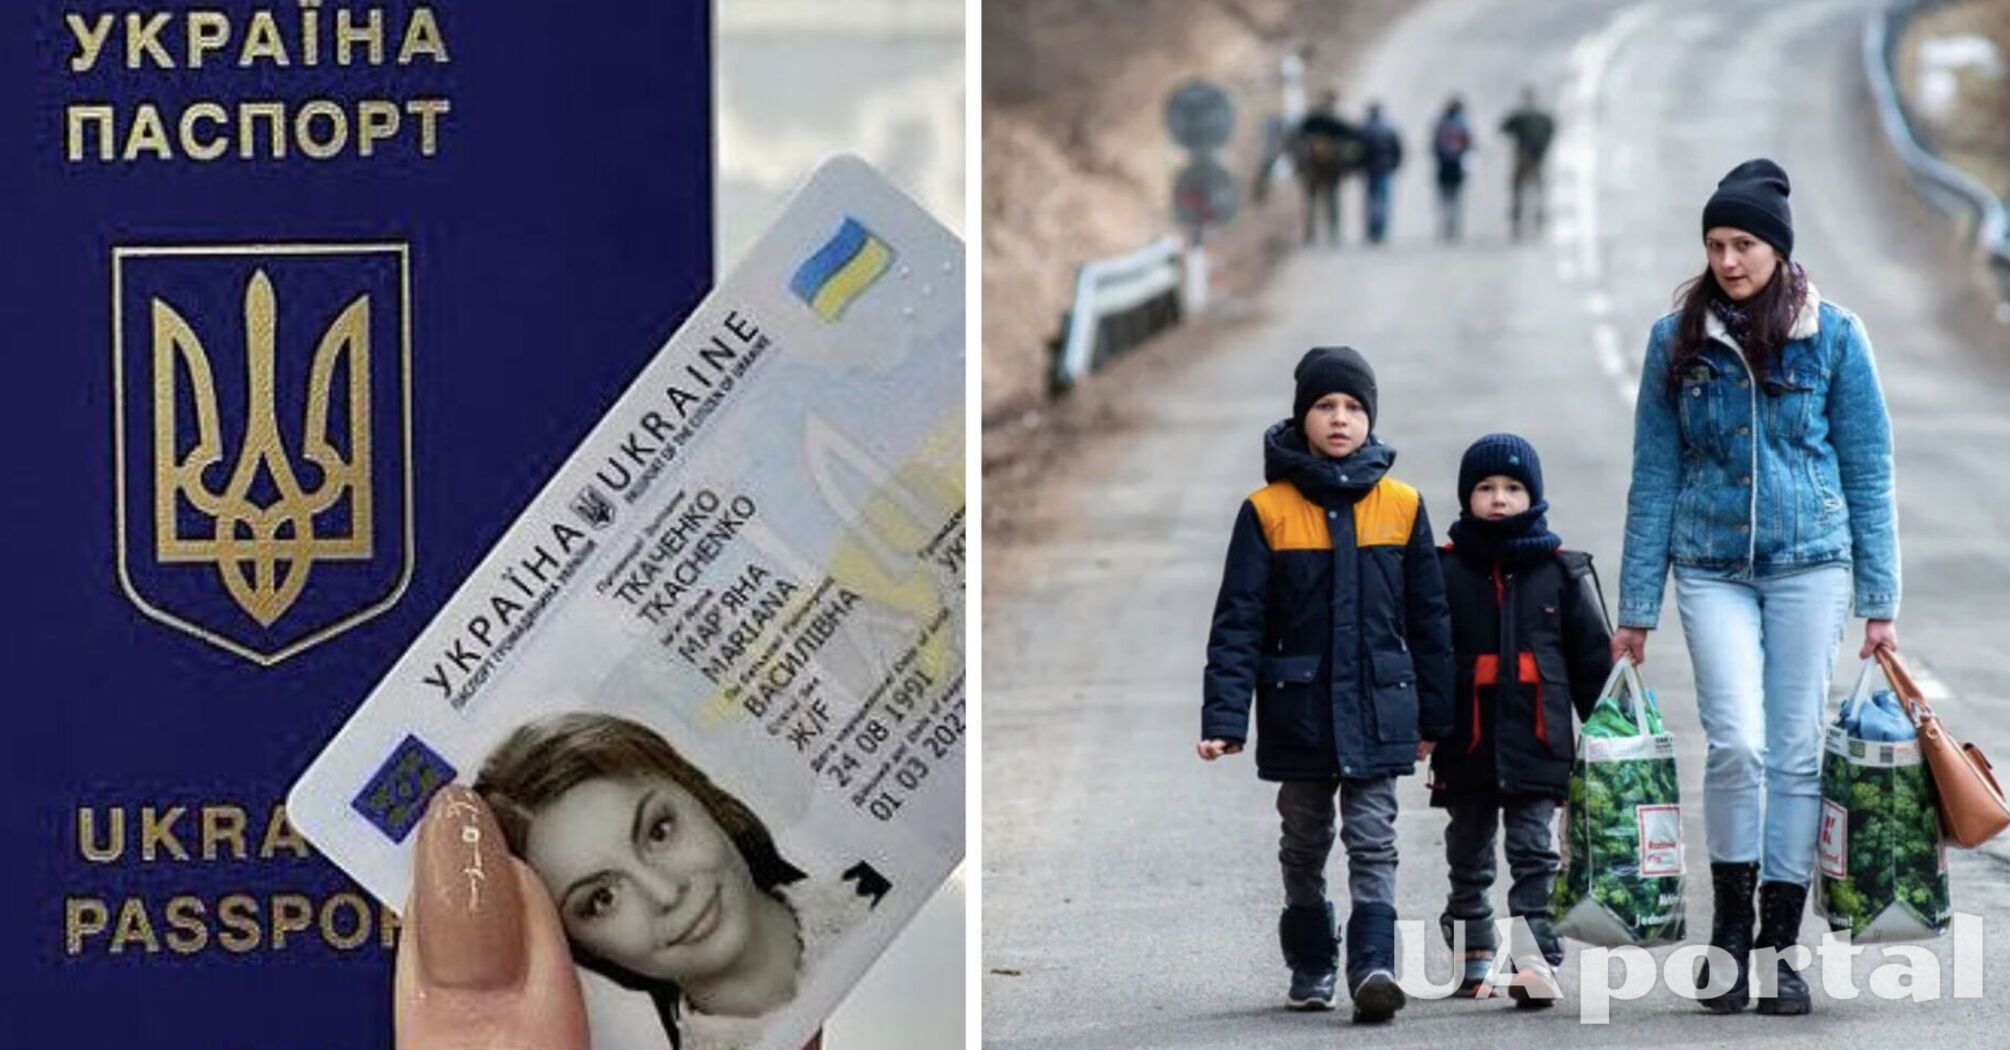 Некоторые украинцы могут выехать в страны ЕС по внутренним паспортам: кого это касается